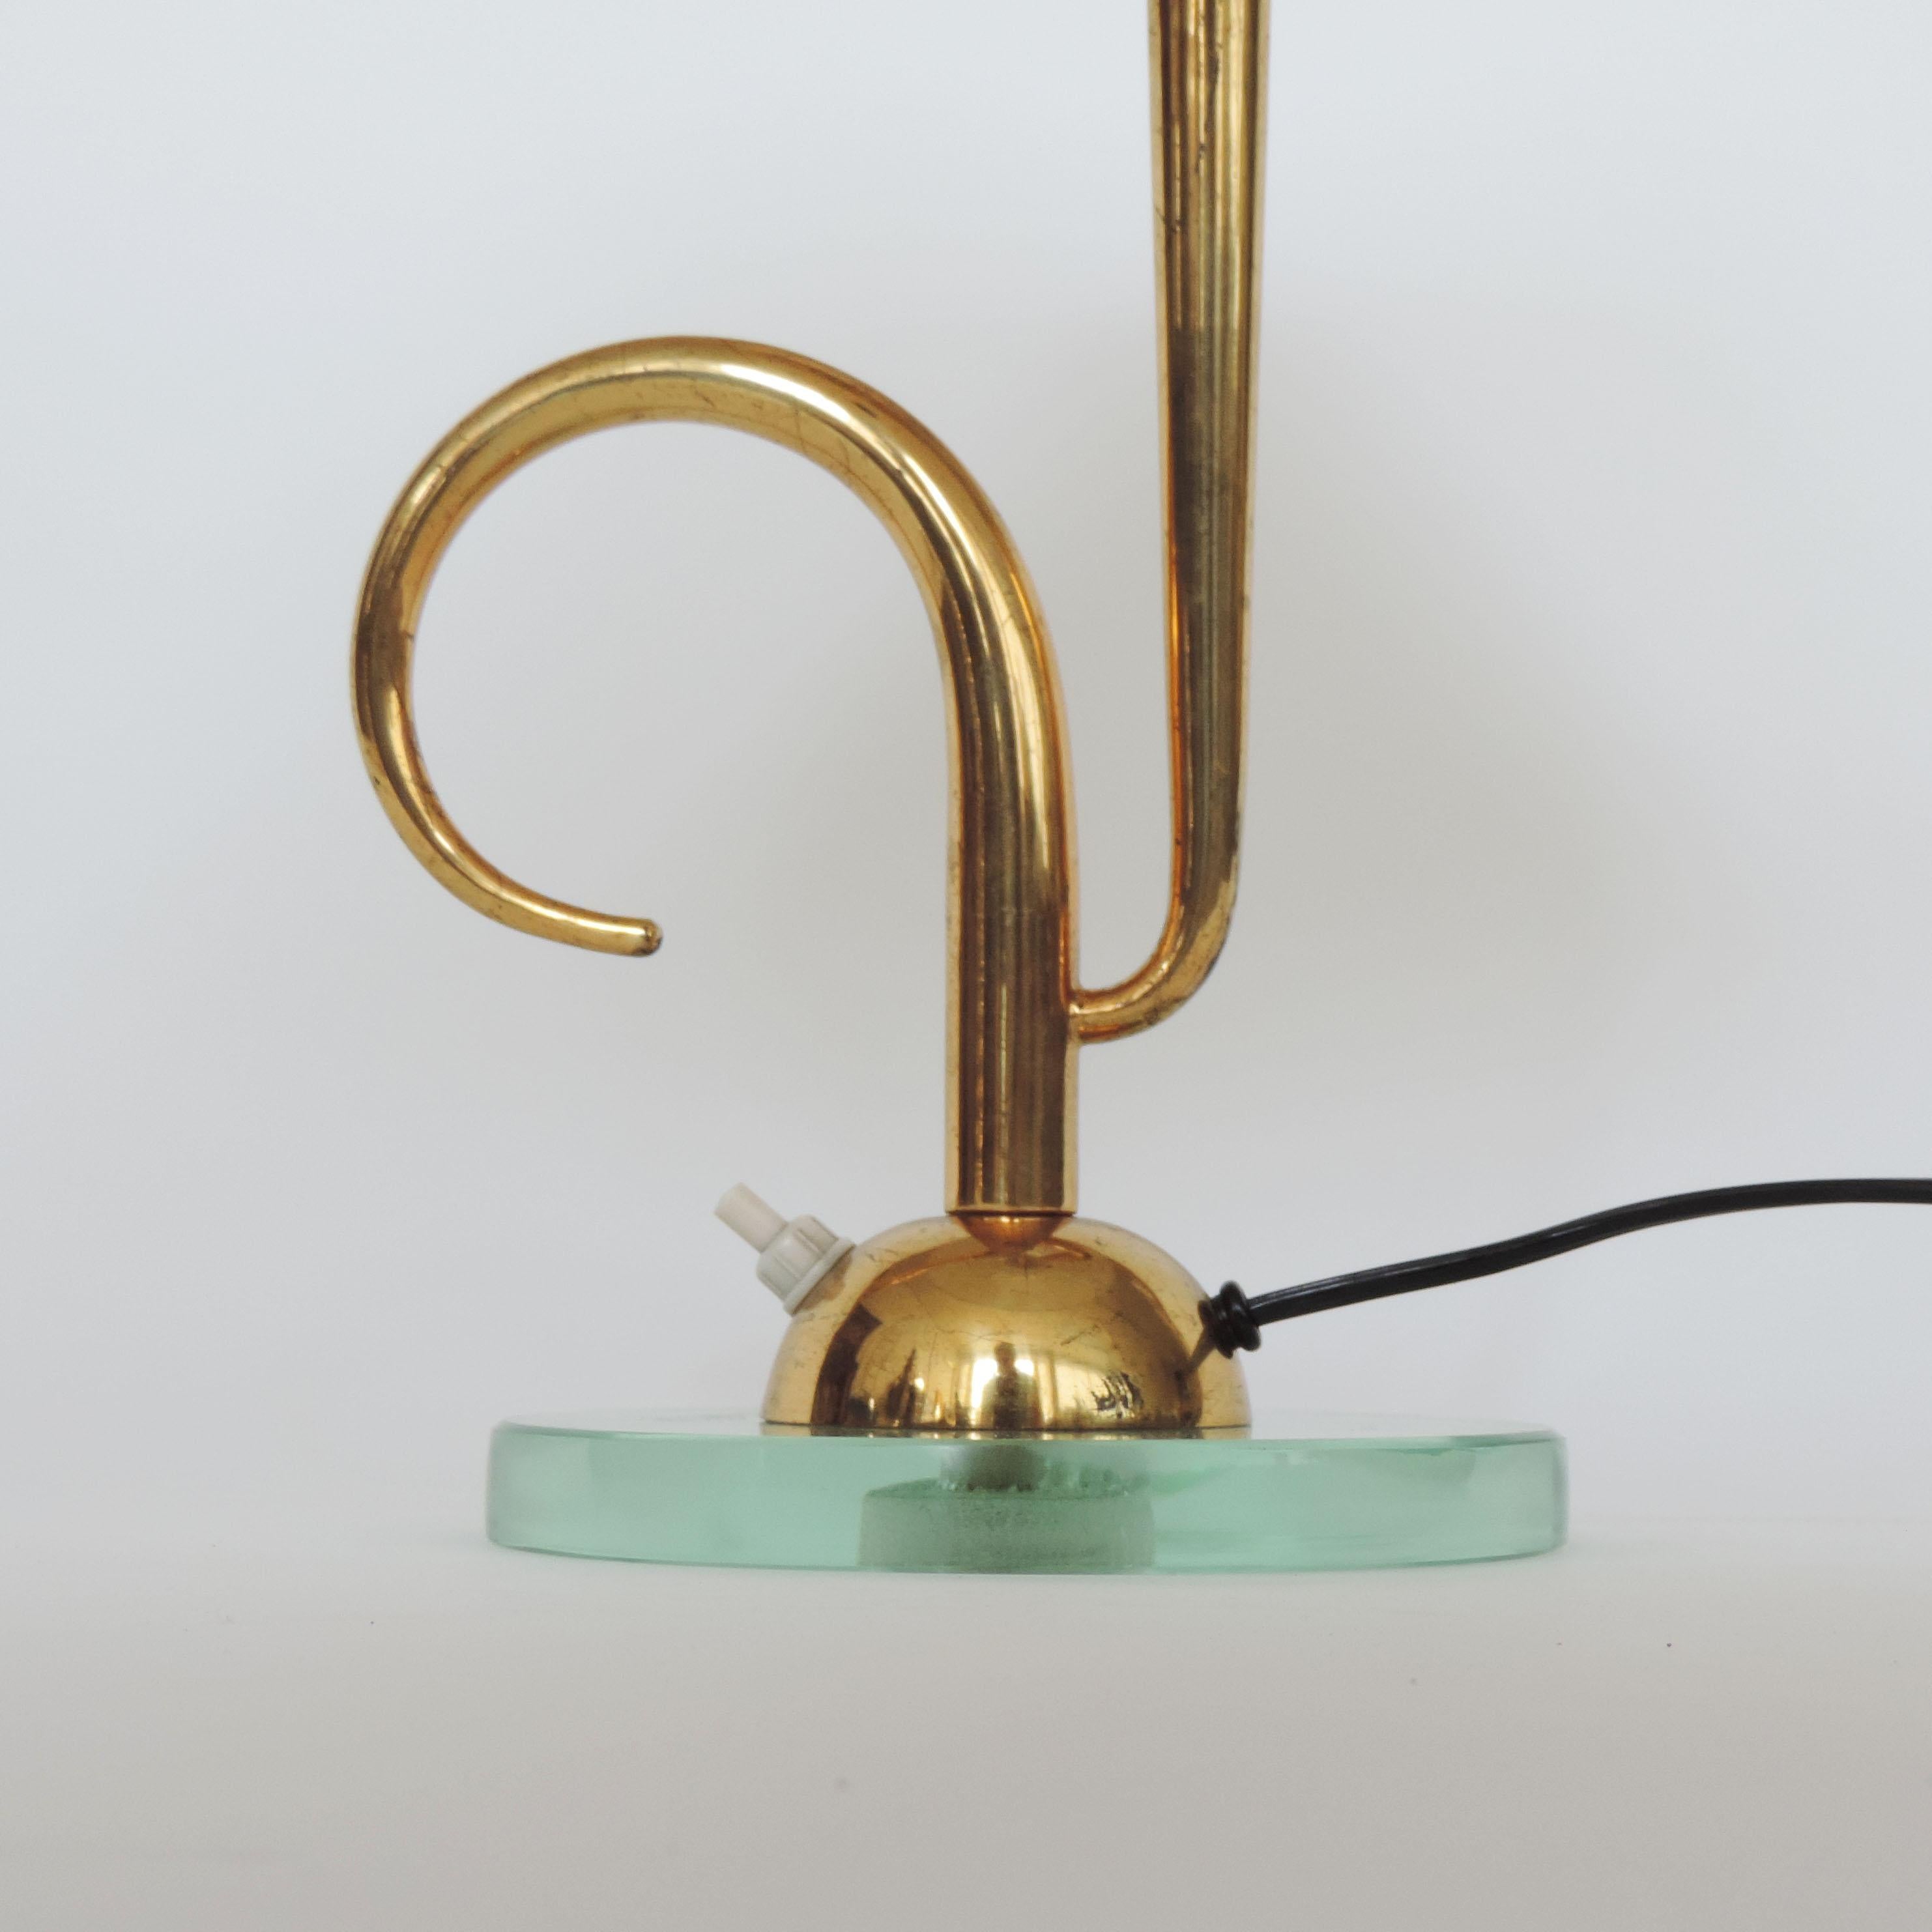 Italienische Tischlampe aus Glas und Messing aus den 1940er Jahren.
Die Höhe wird ohne Lampenschirm gemessen.